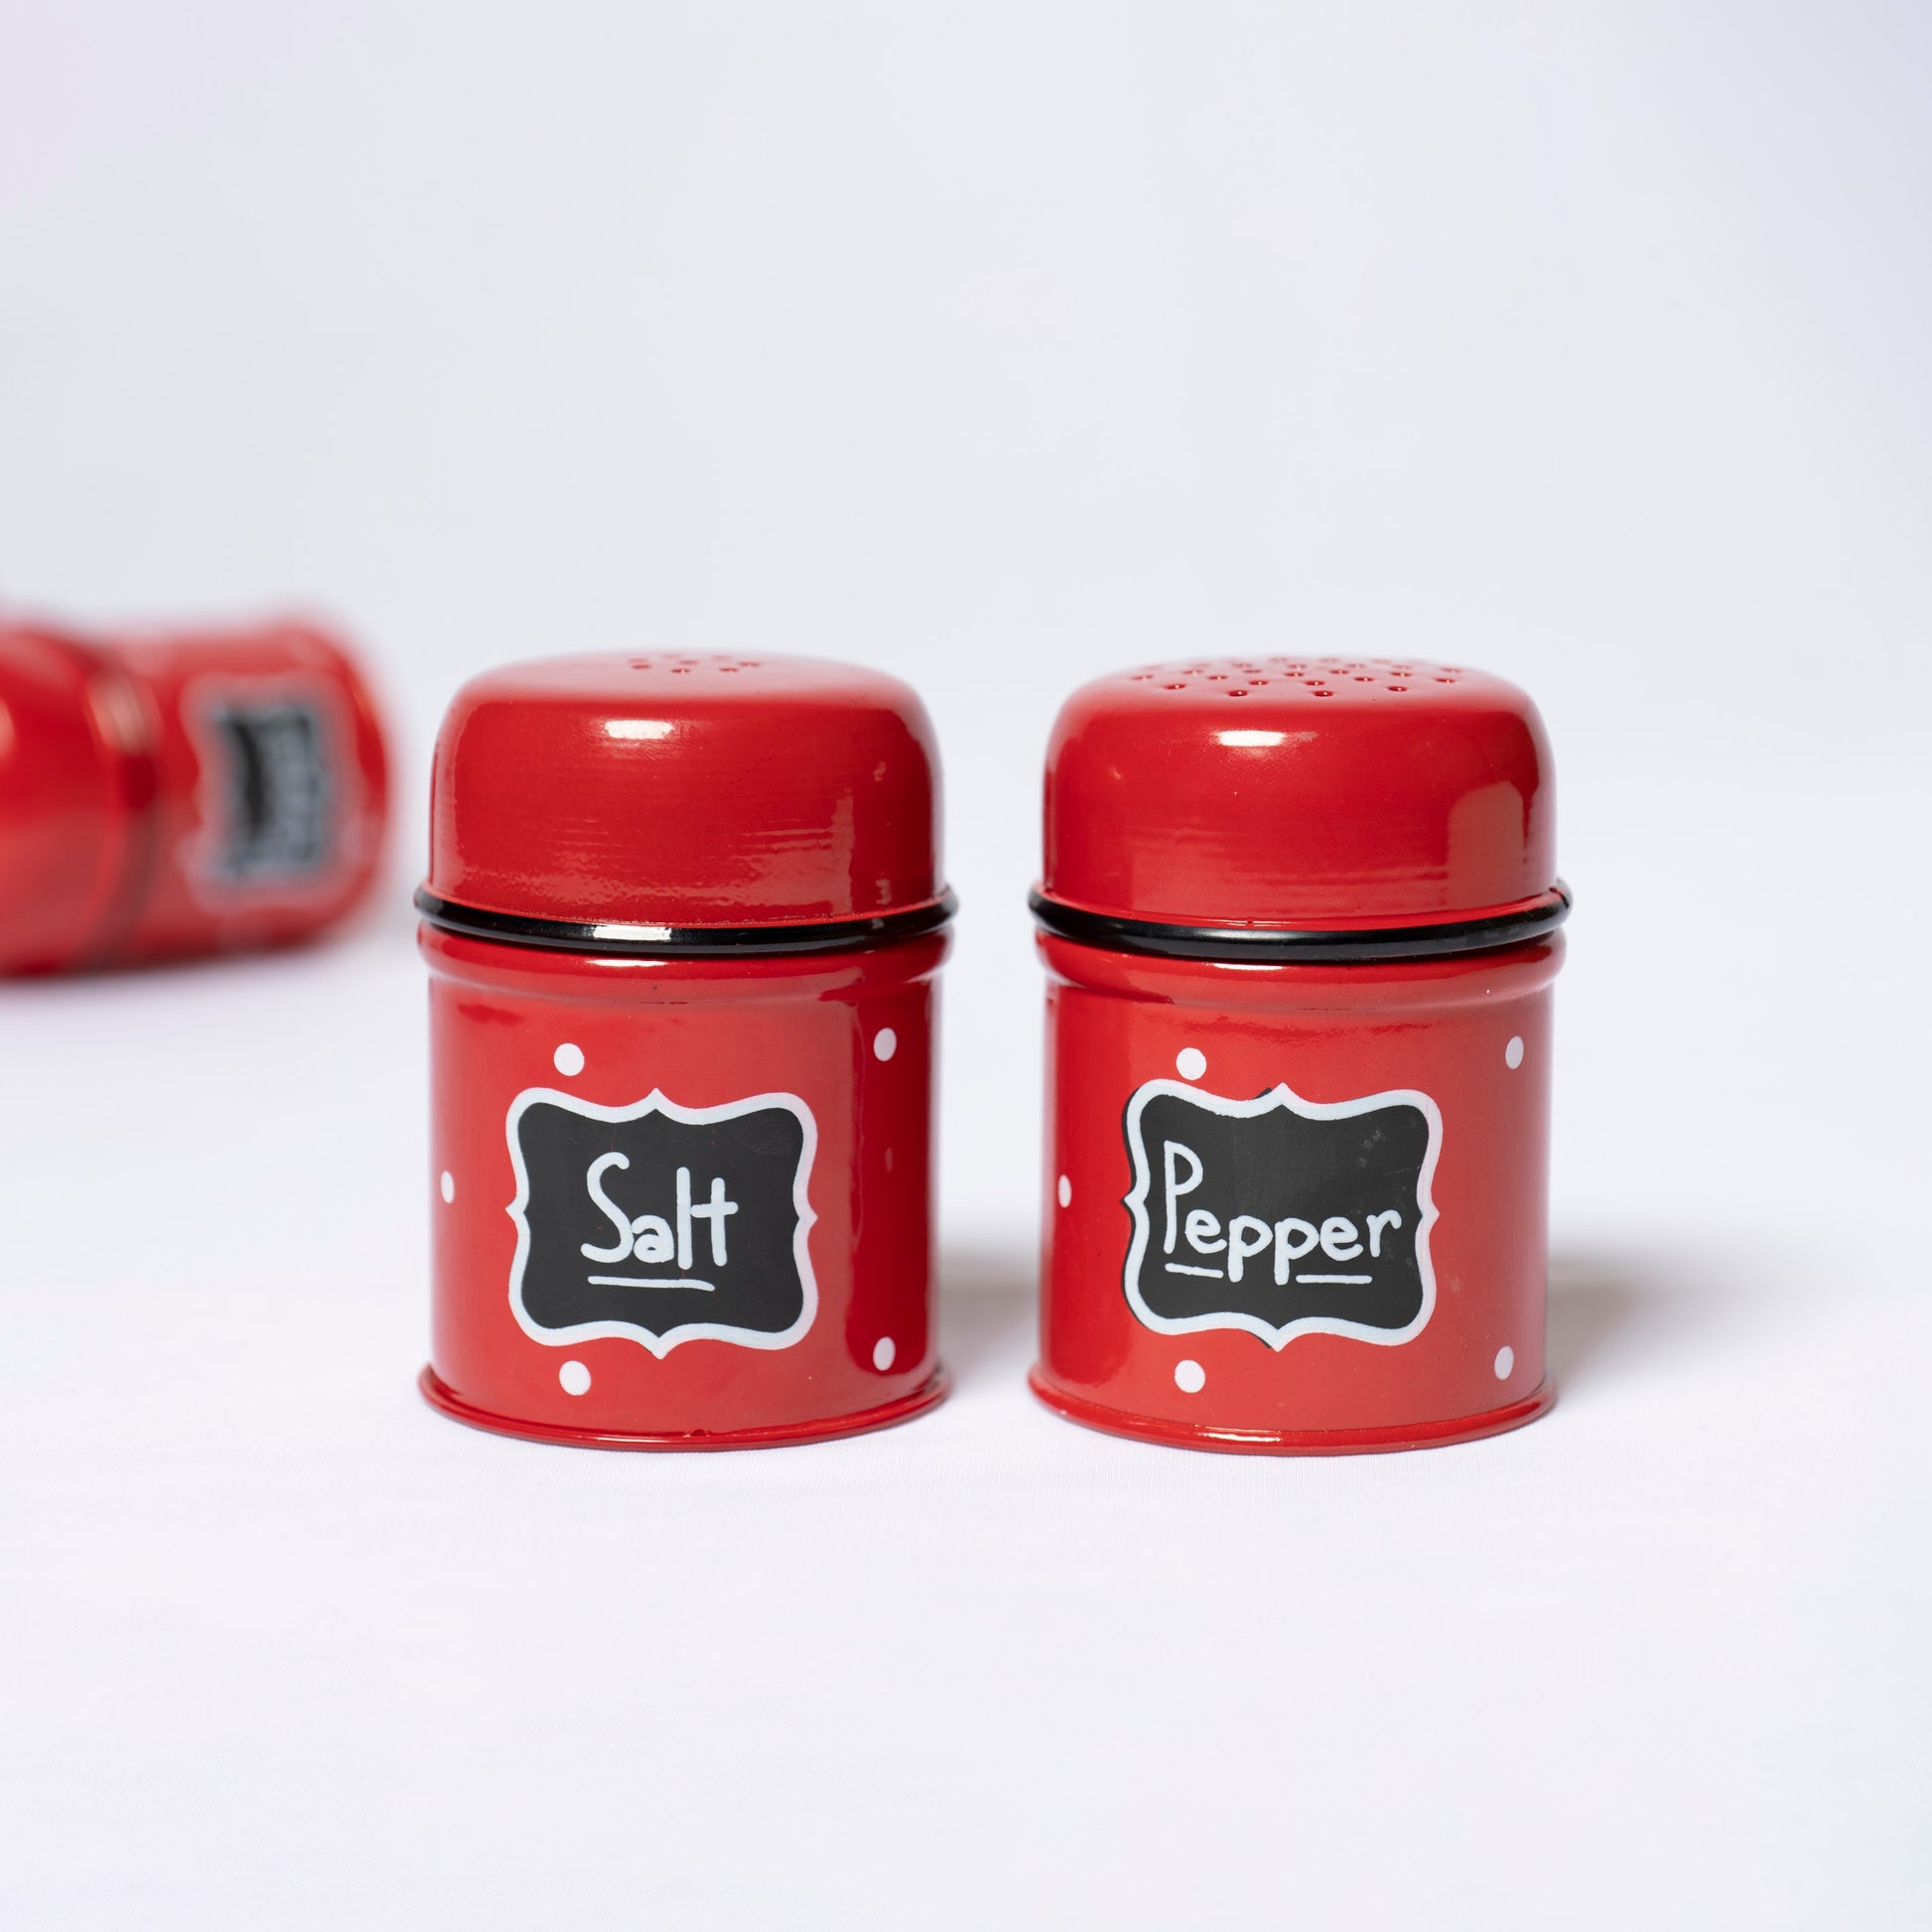 Polka Dot Steel Pepper and Salt Dispenser (Red) - SPST0001 - View 4